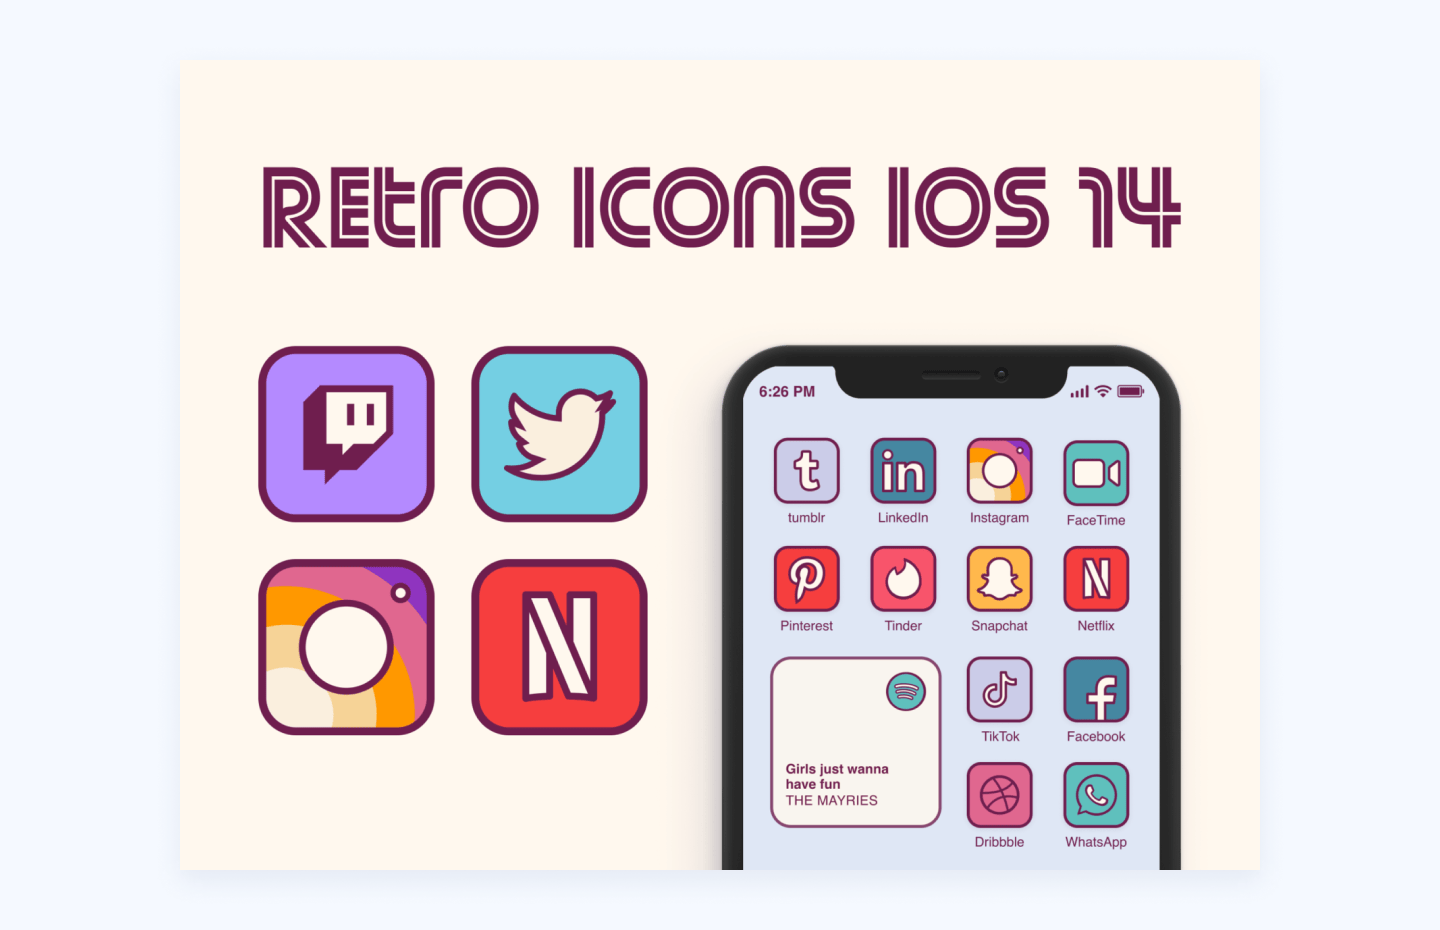 Customized retro icons for iOS 14, author: Ruxandra Nastase